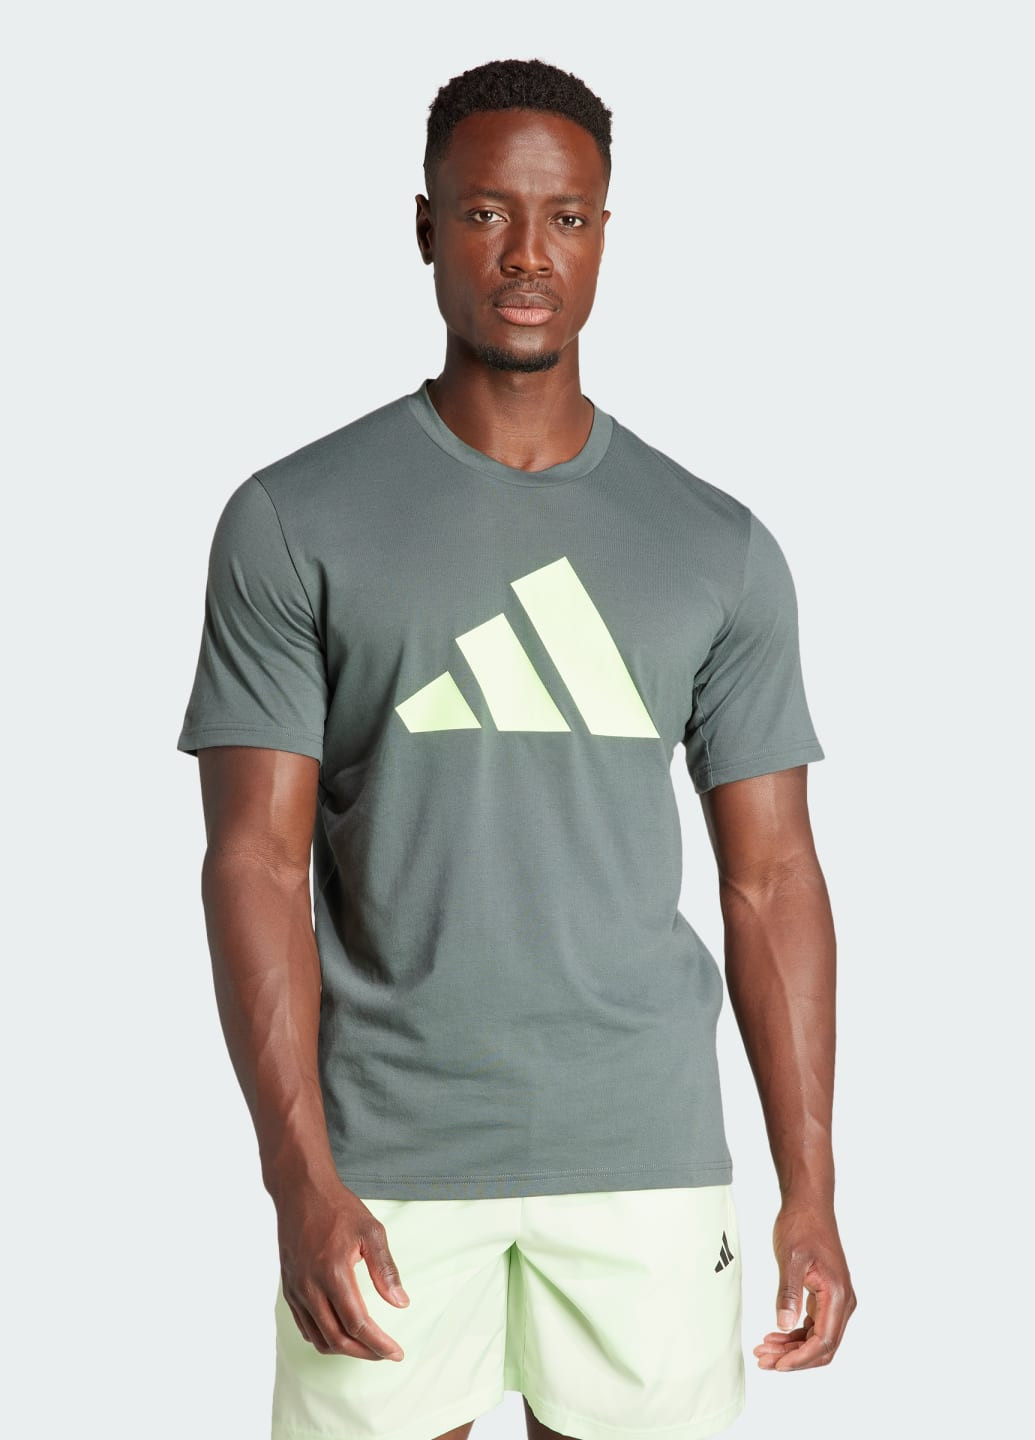 Серая футболка для тренировок train essentials feelready logo adidas